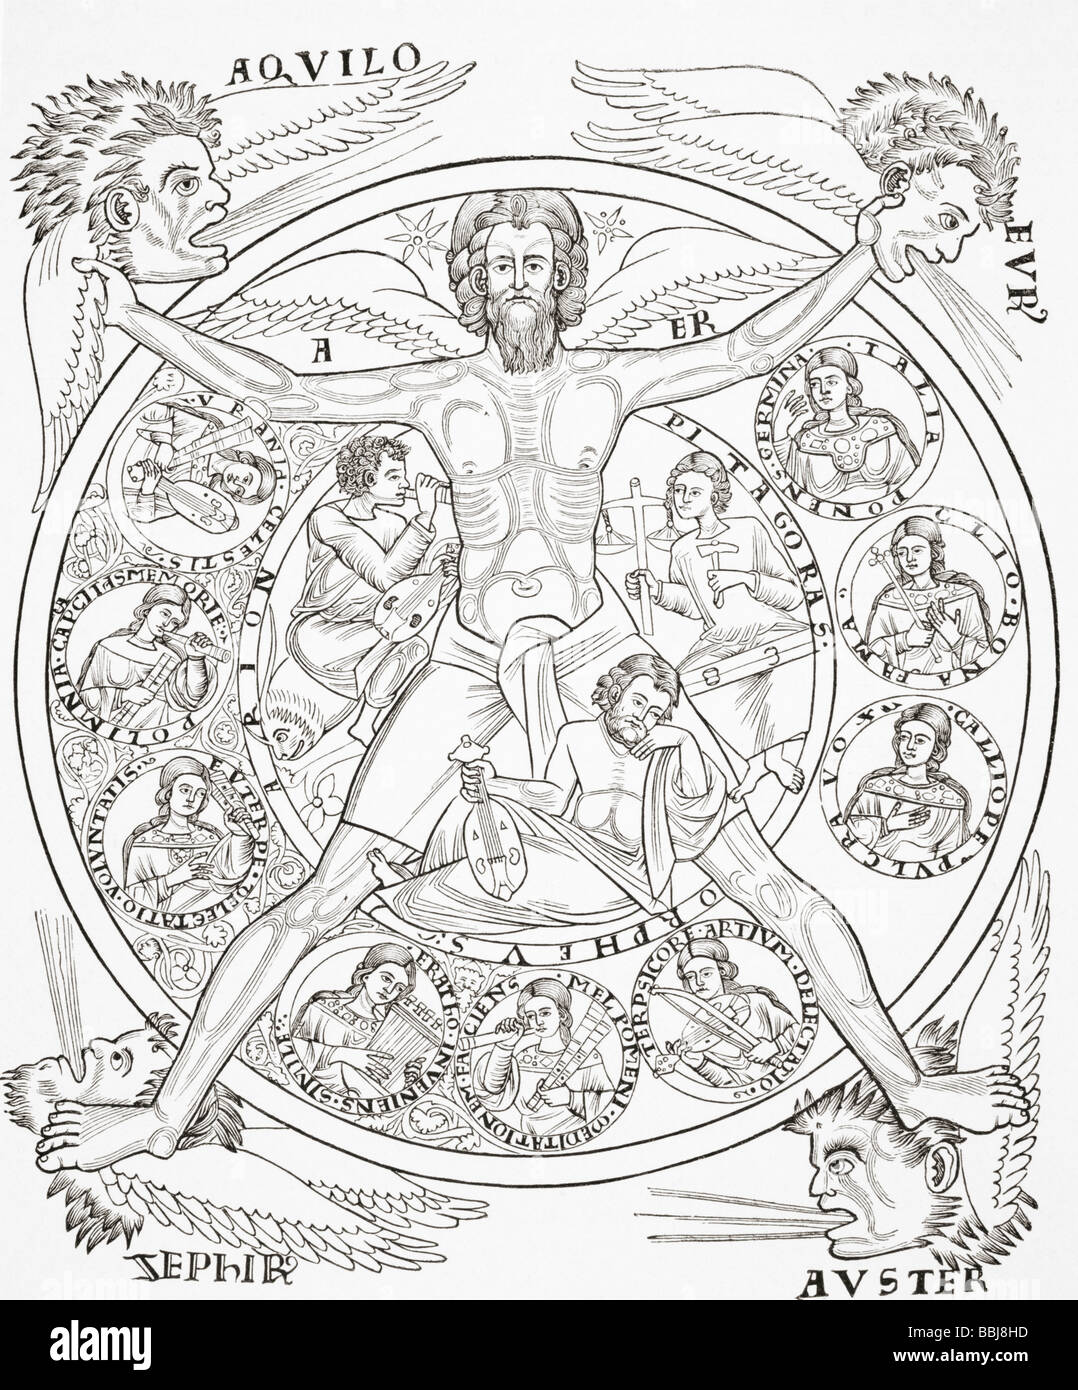 Le nove muse ispiratrici di Arion Orfeo e pitagora sotto gli auspici del personificata aria, fonte di ogni armonia. Foto Stock